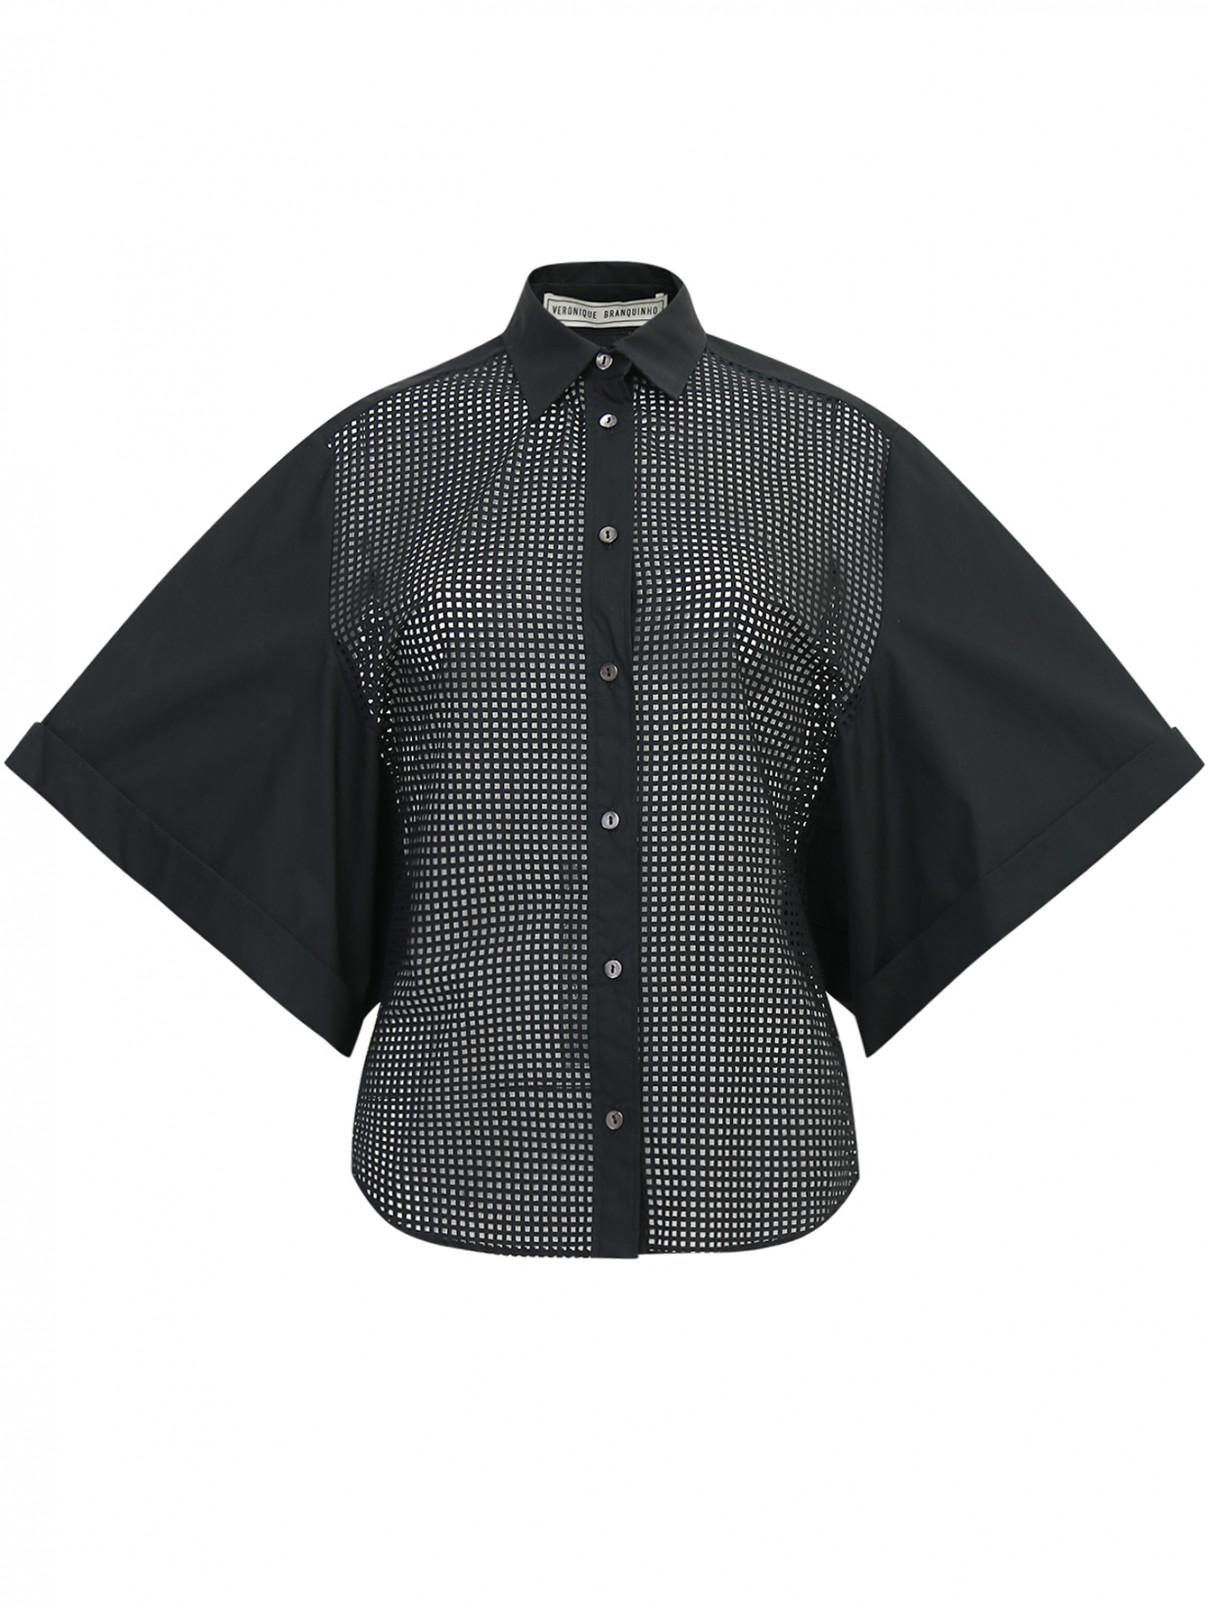 Блуза свободного кроя из хлопка с перфорацией Veronique Branquinho  –  Общий вид  – Цвет:  Черный